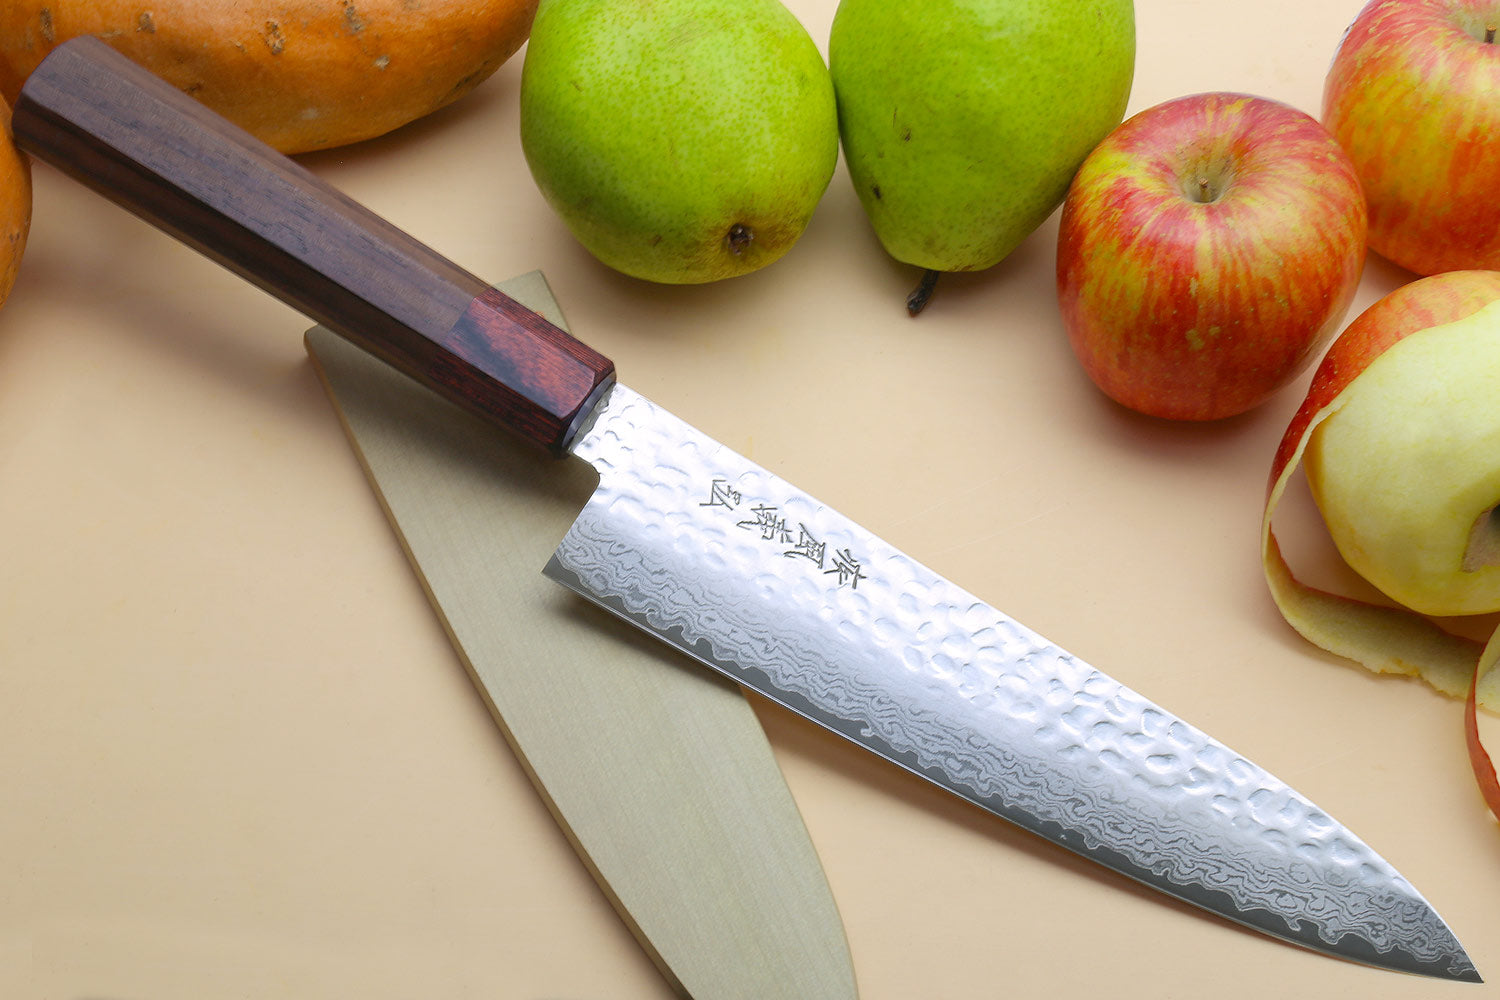 10 Gyuto (Japanese Style) Chef Knife